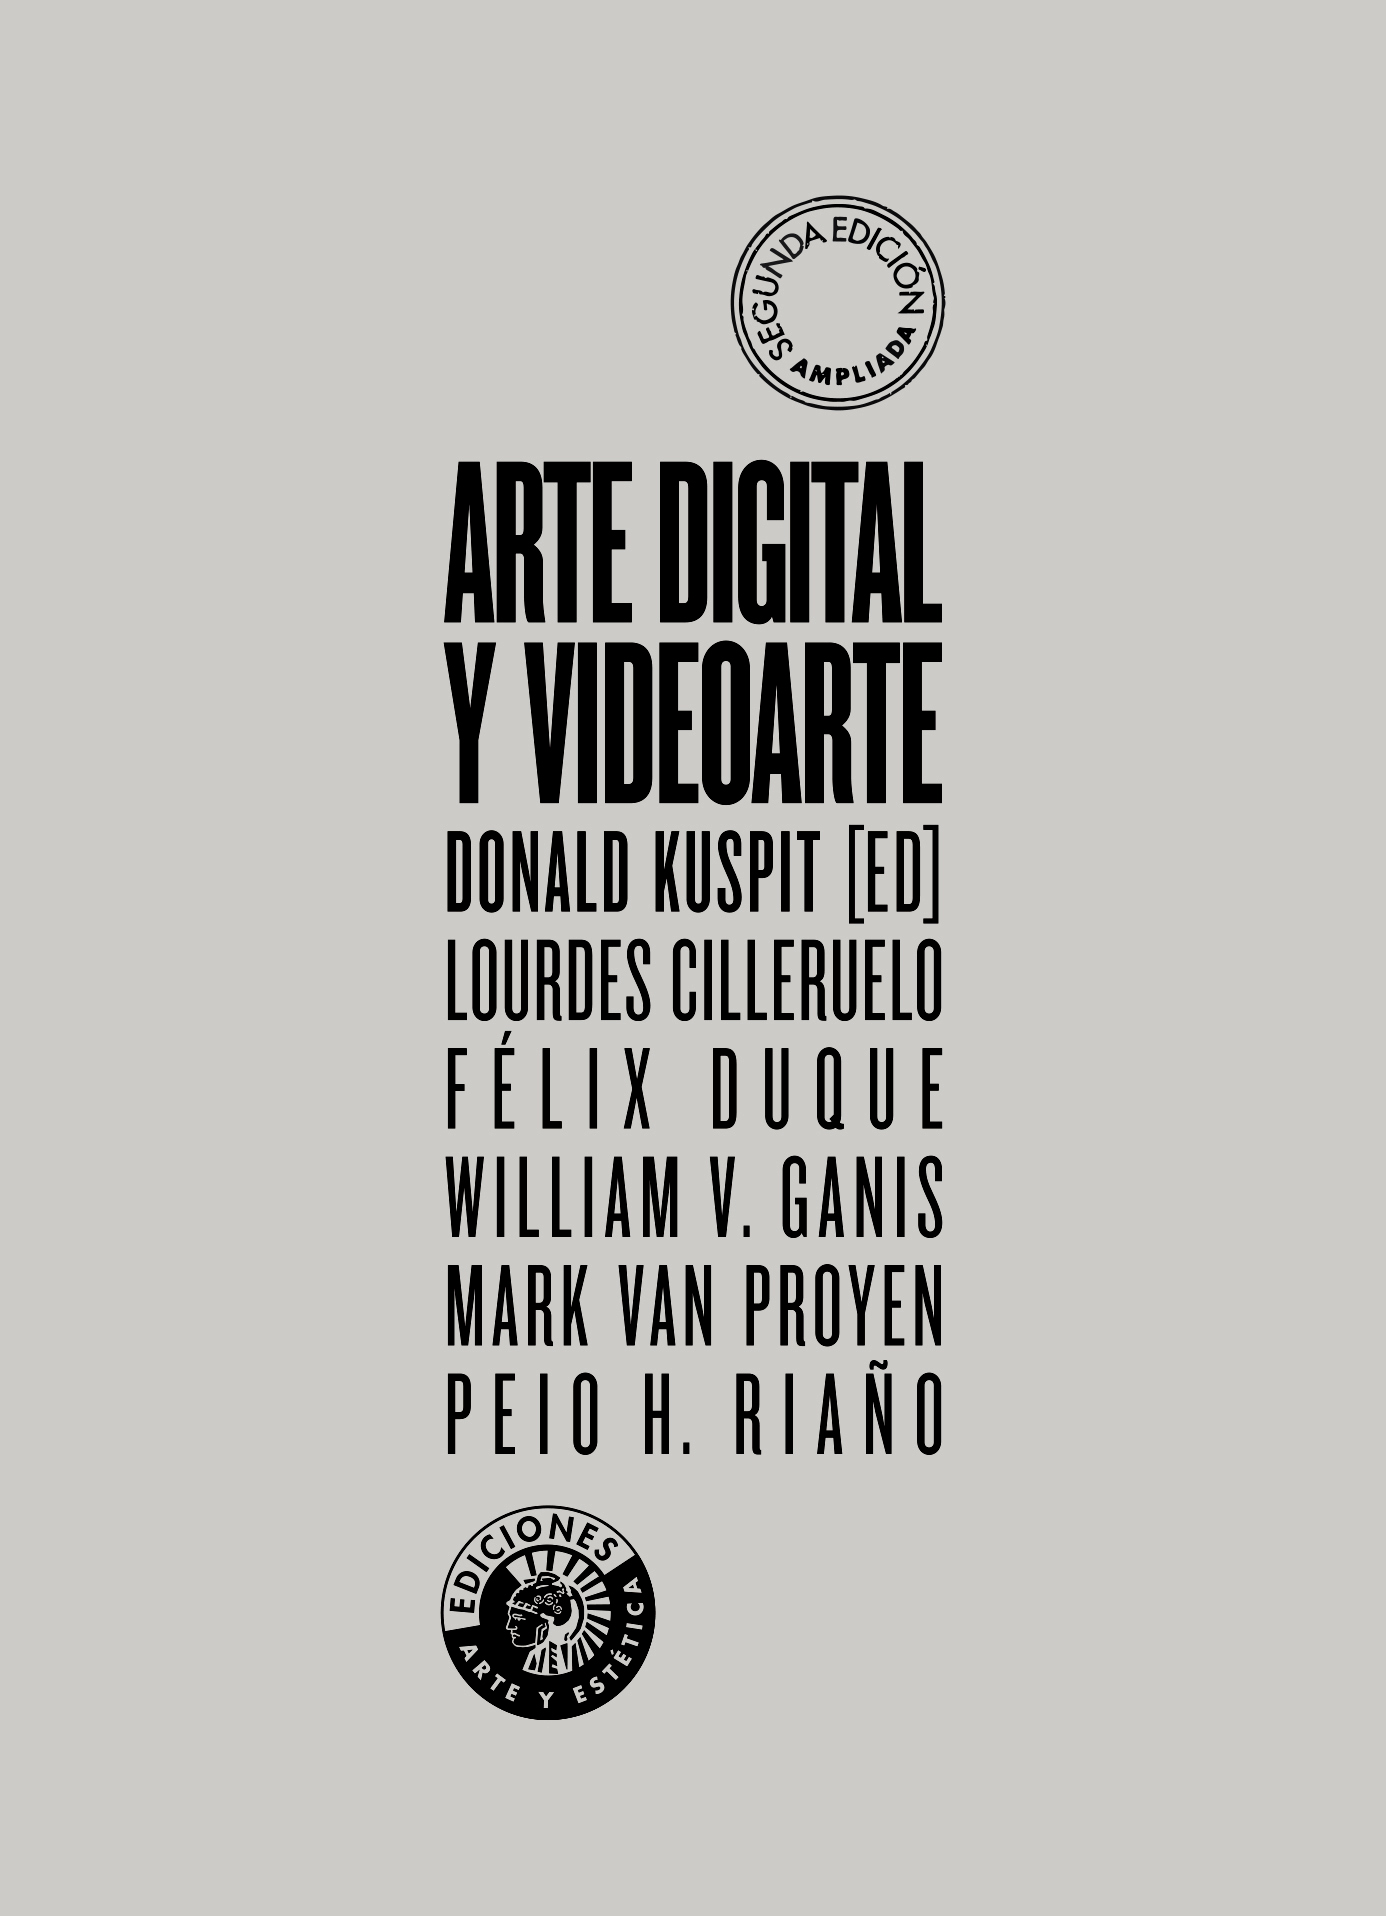 Cubierta del libro "Arte digital y videoarte" de Donald Kuspit.